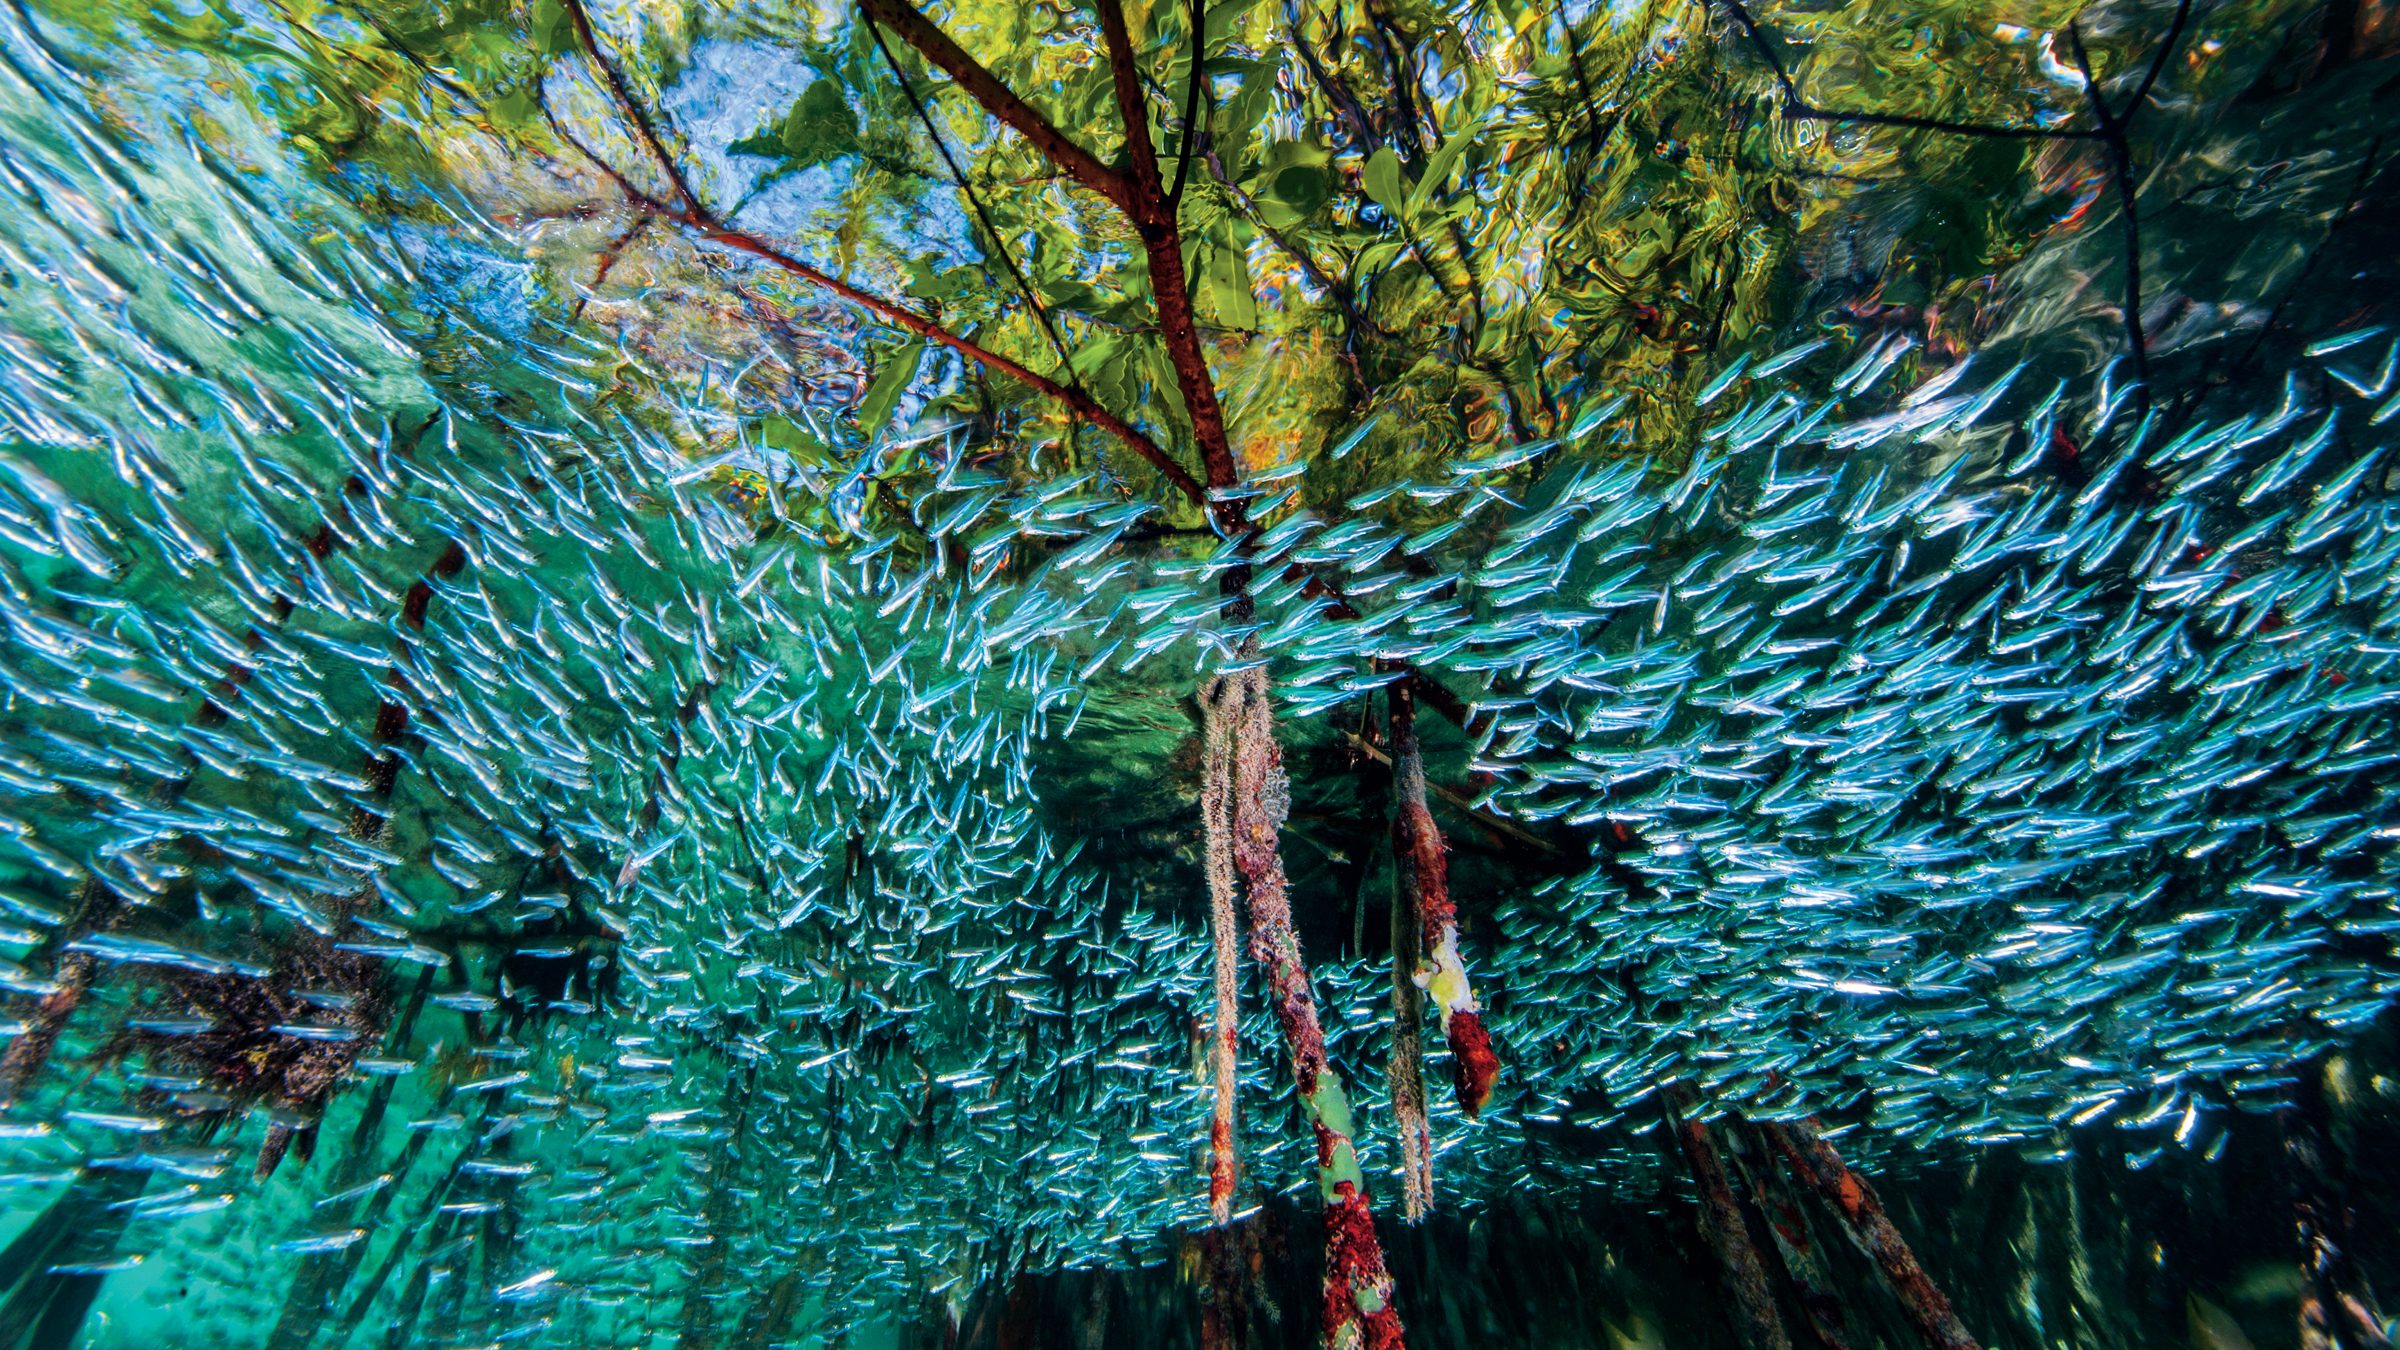 Hàng nghìn con các bạc má tạo thành vòng xoáy ở các rặng san hô tại rừng ngập mặn ở Cuba. Loài cá có kích thước chỉ bằng ngón tay có tập tính này để gây hoang mang cho những con cá săn mồi.